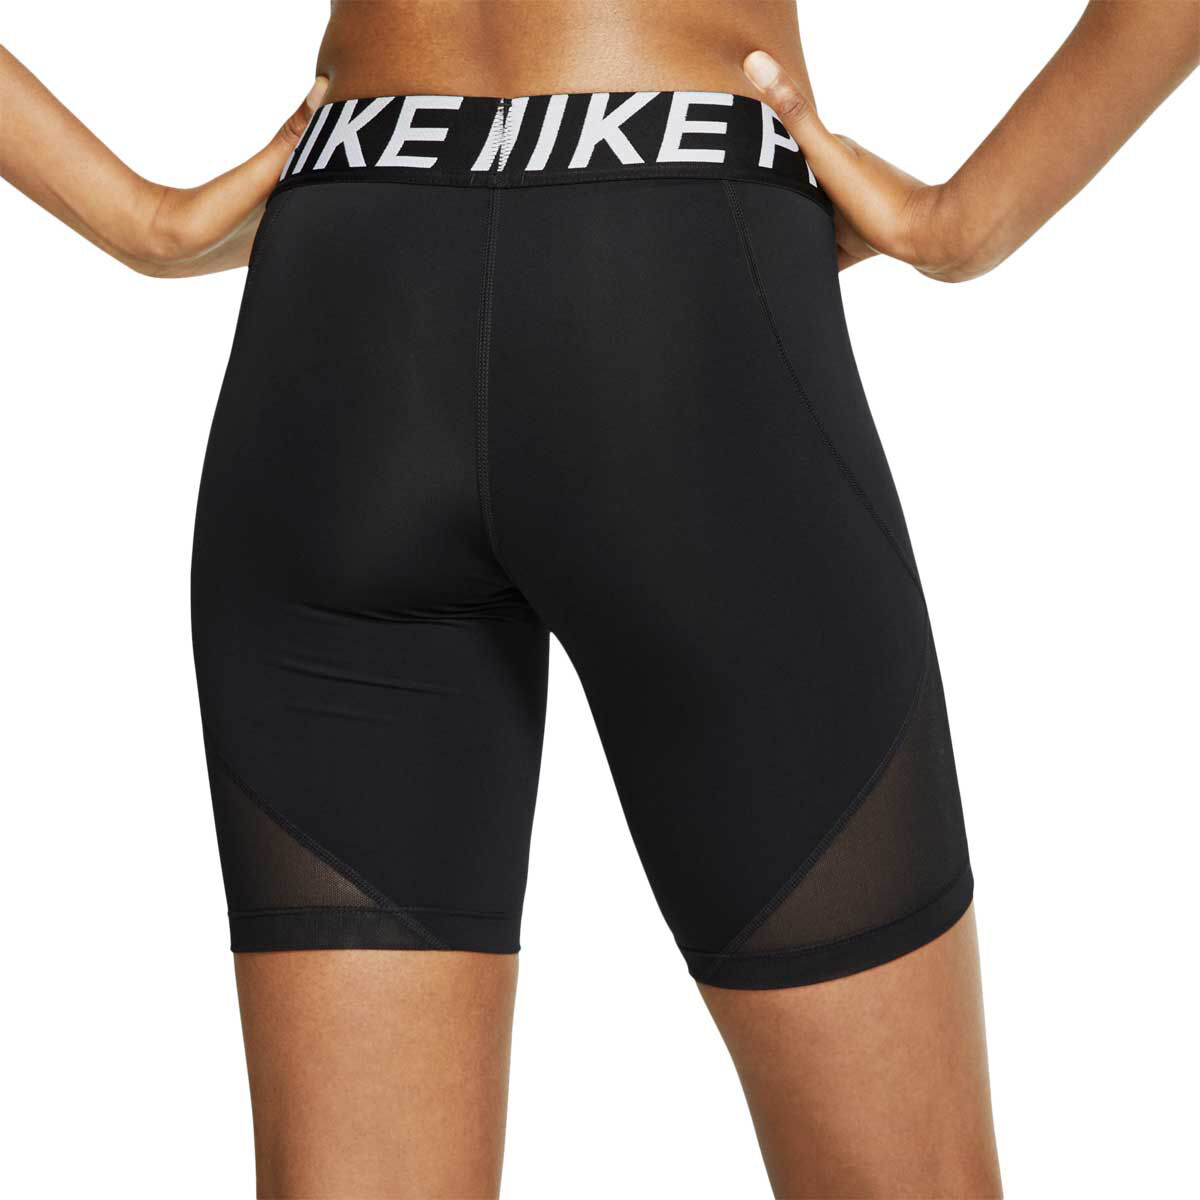 nike pro cycling shorts womens